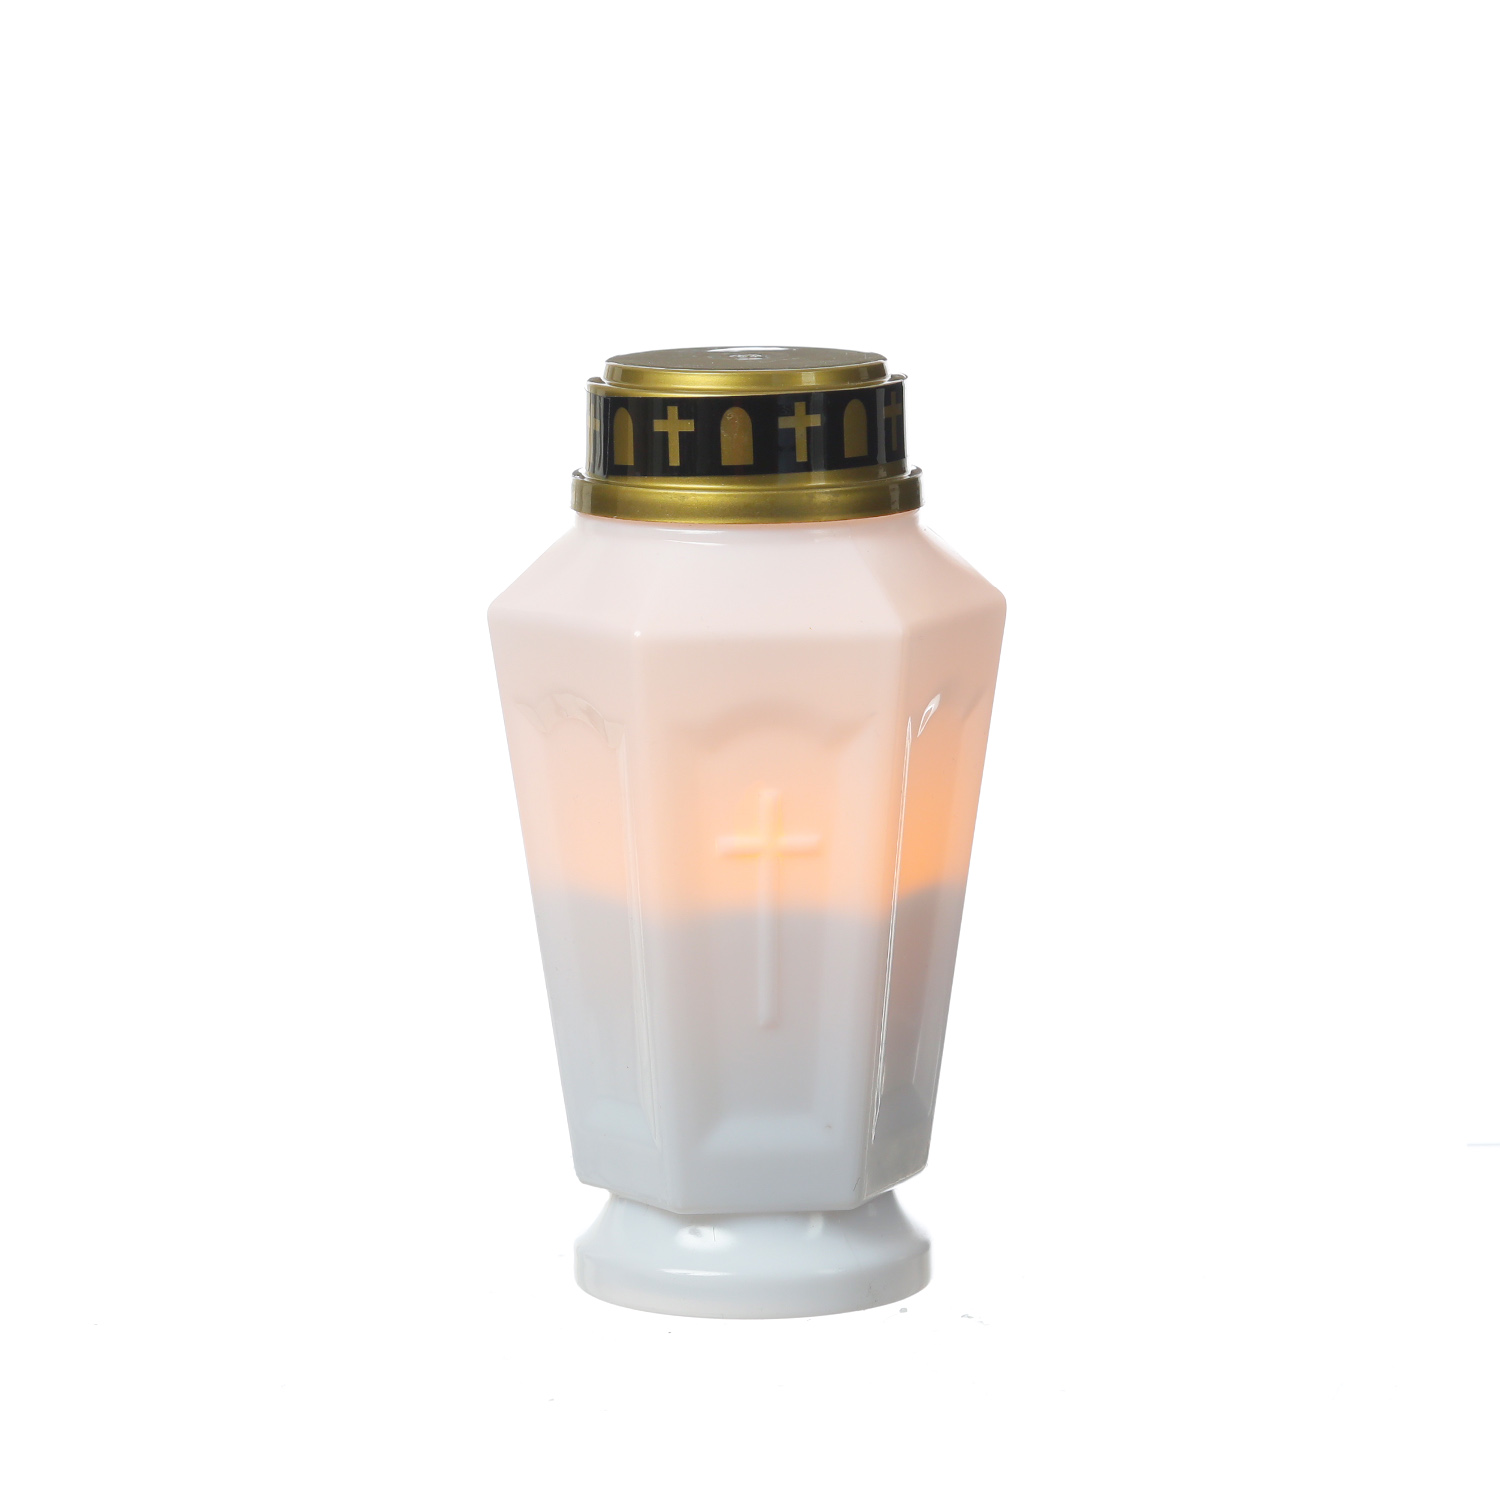 LED Grablicht - Grabkerze - orange flackernd - Timer- H: 15,5cm - für Außen - weiß